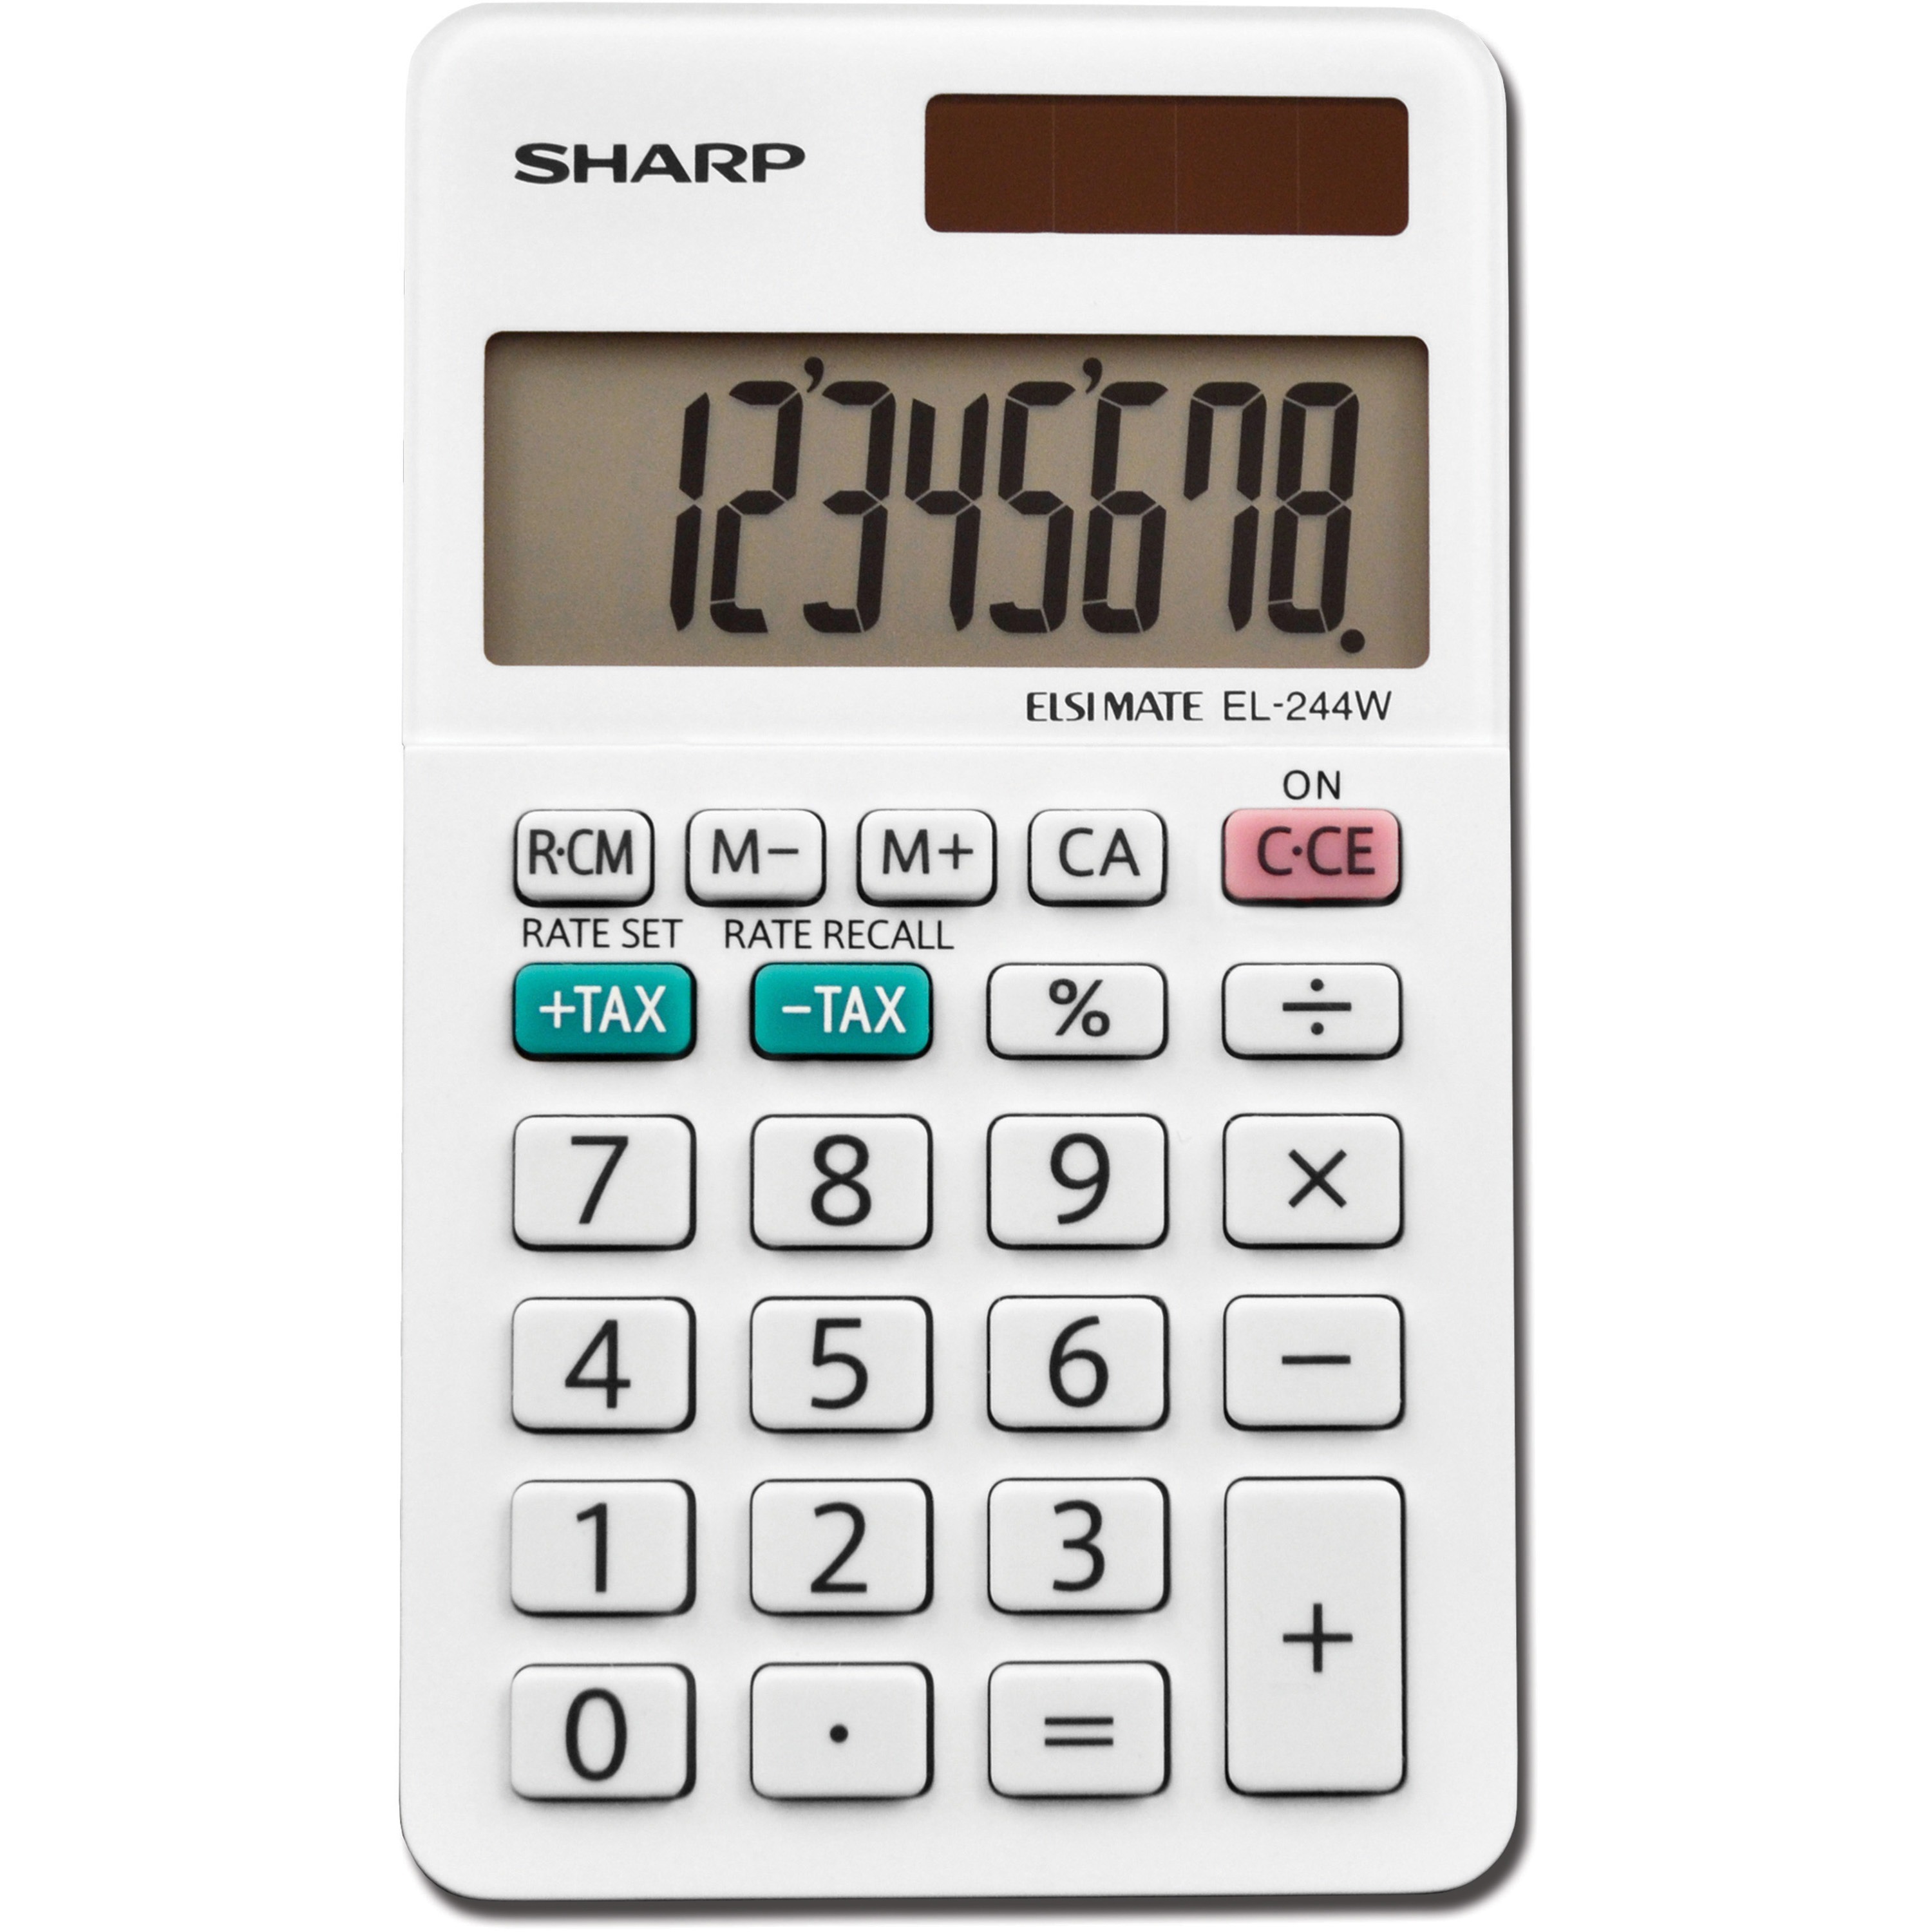 Zerbee　Pocket　EL-244WB　Sharp　Professional　Digit　Calculator